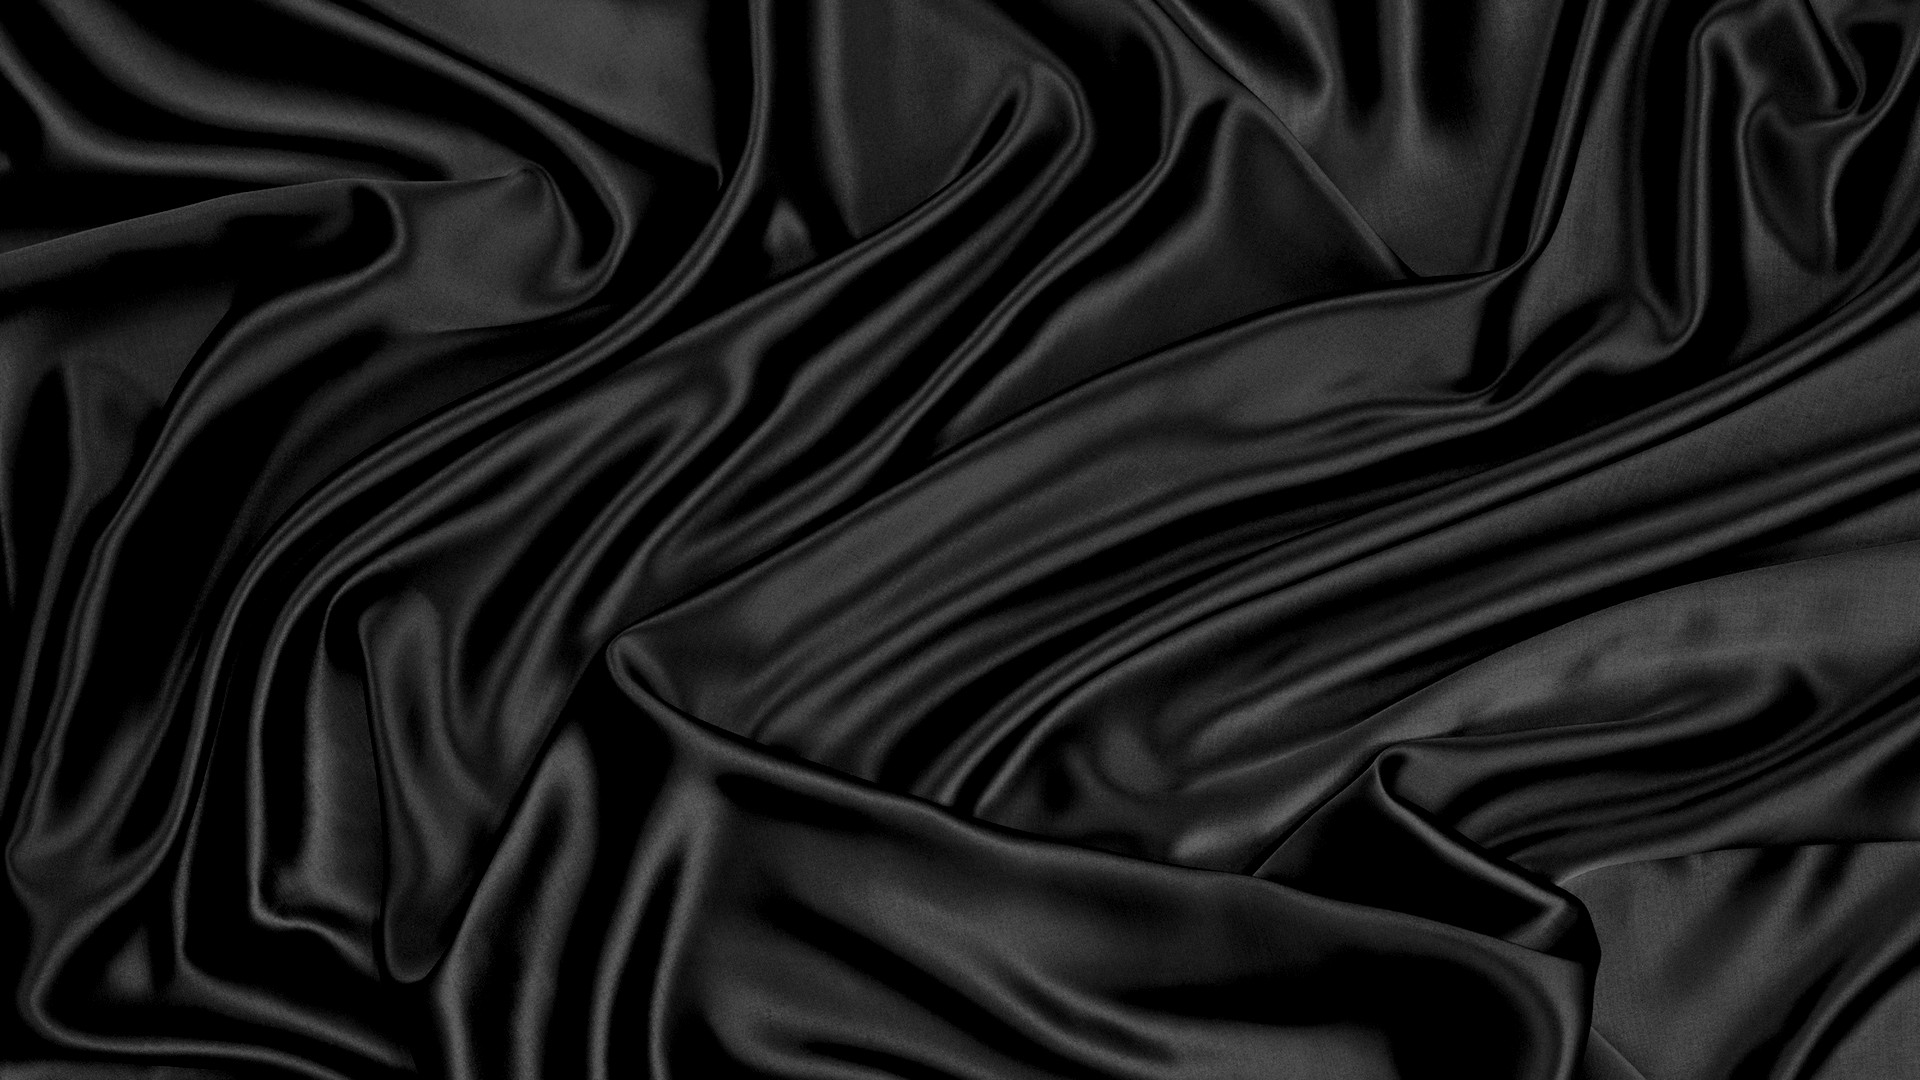 Với sự pha trộn giữa sắc đen trang nhã và chất liệu taffeta cao cấp, nền taffeta đen sẽ đem đến cho bạn một bức ảnh đầy sang trọng và đẳng cấp. Nền taffeta đen cũng là một lựa chọn hoàn hảo để làm nền trong các bức ảnh chân dung, giúp tôn lên nét đẹp của người mẫu. Vì vậy, hãy cùng nhau đắm chìm trong không gian đen tuyền và thưởng thức vẻ đẹp đầy mê hoặc của nền taffeta đen.